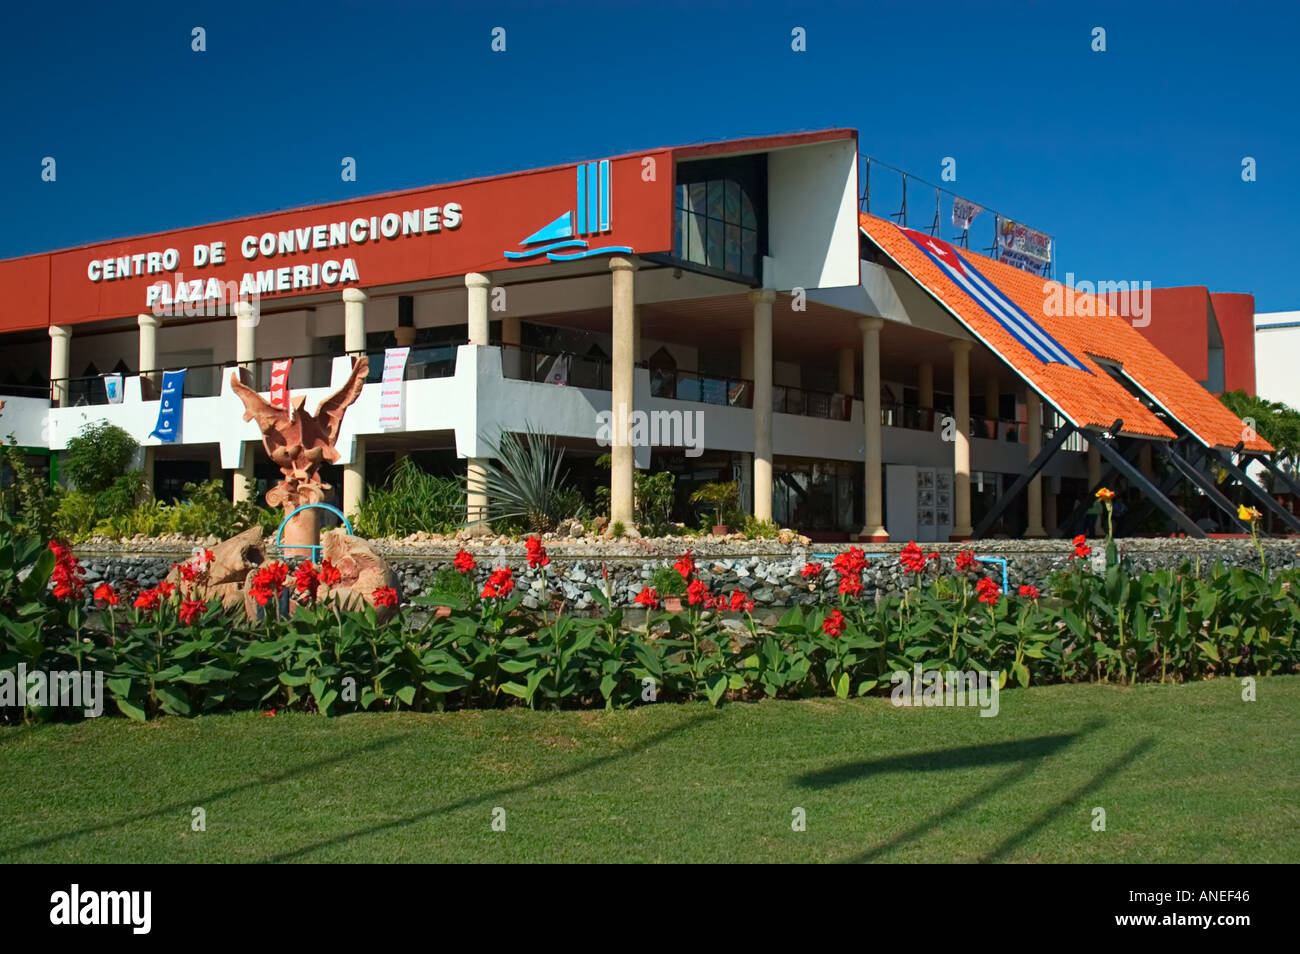 Convention Center - Plaza Americas, Varadero, Peninsula de Hicacos,  Matanzas, Cuba, Greater Antilles, Caribbean Stock Photo - Alamy